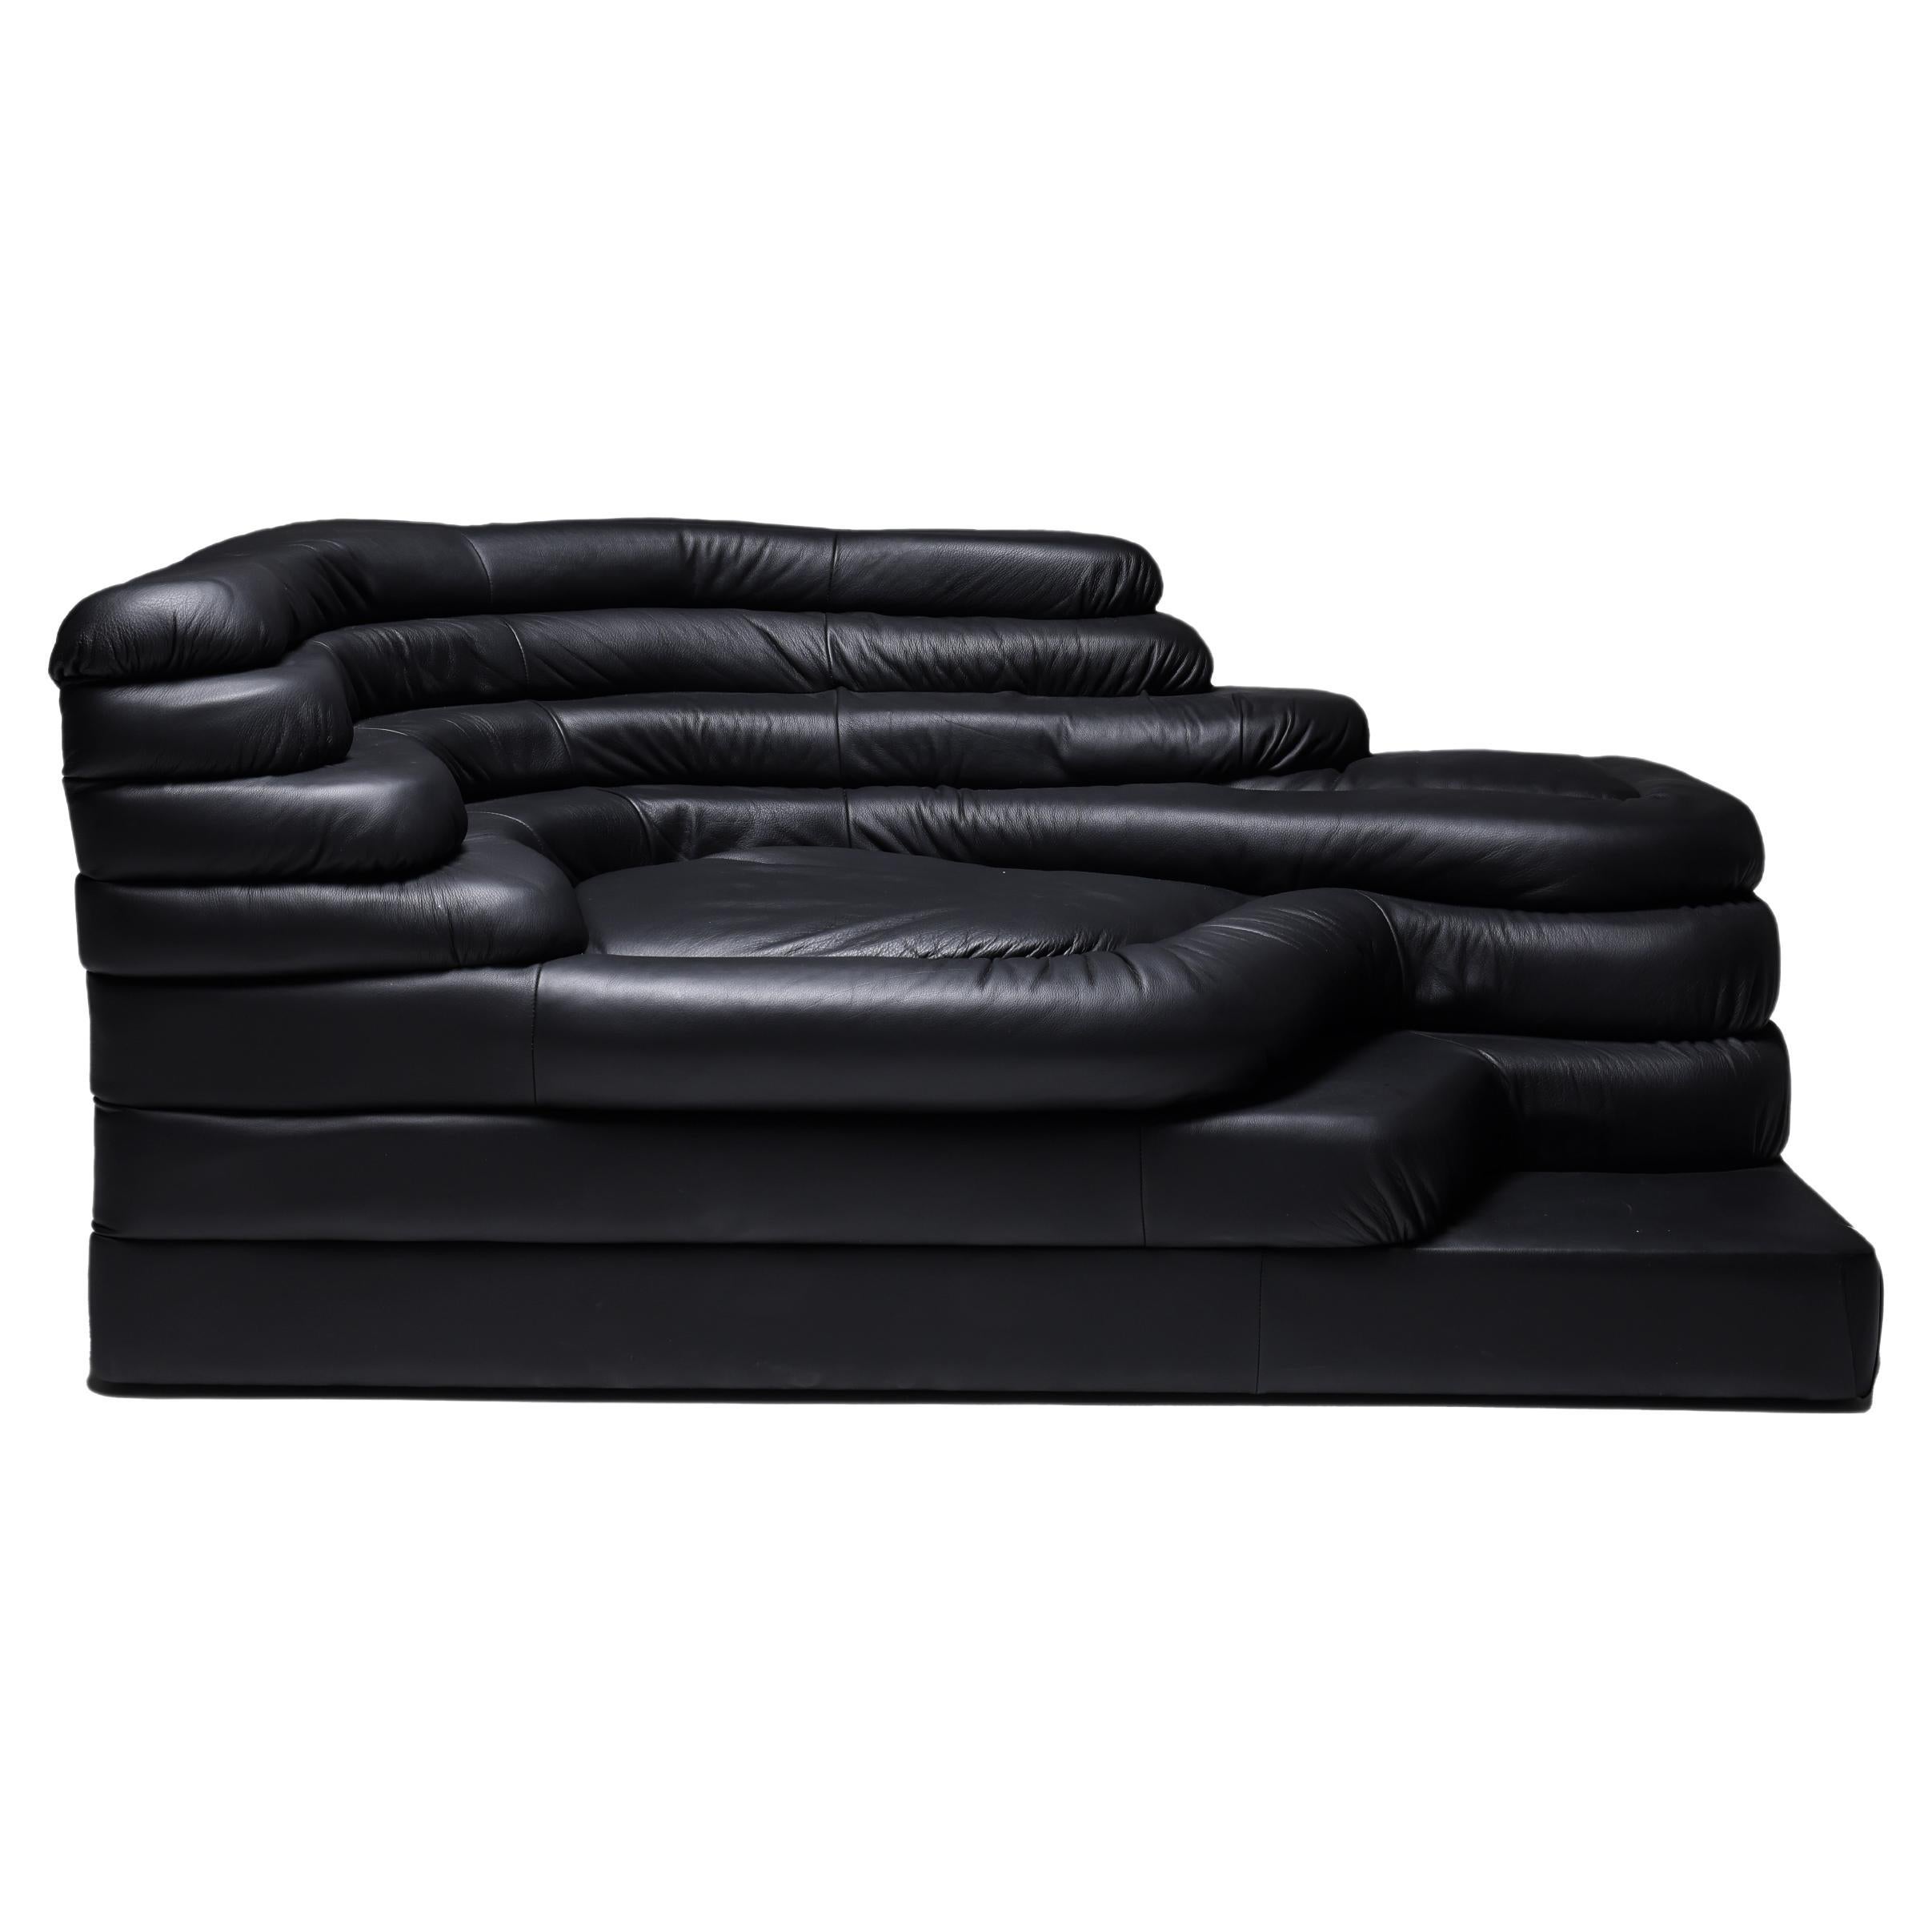 Black leather sofa Terrazza Ubald For Sale